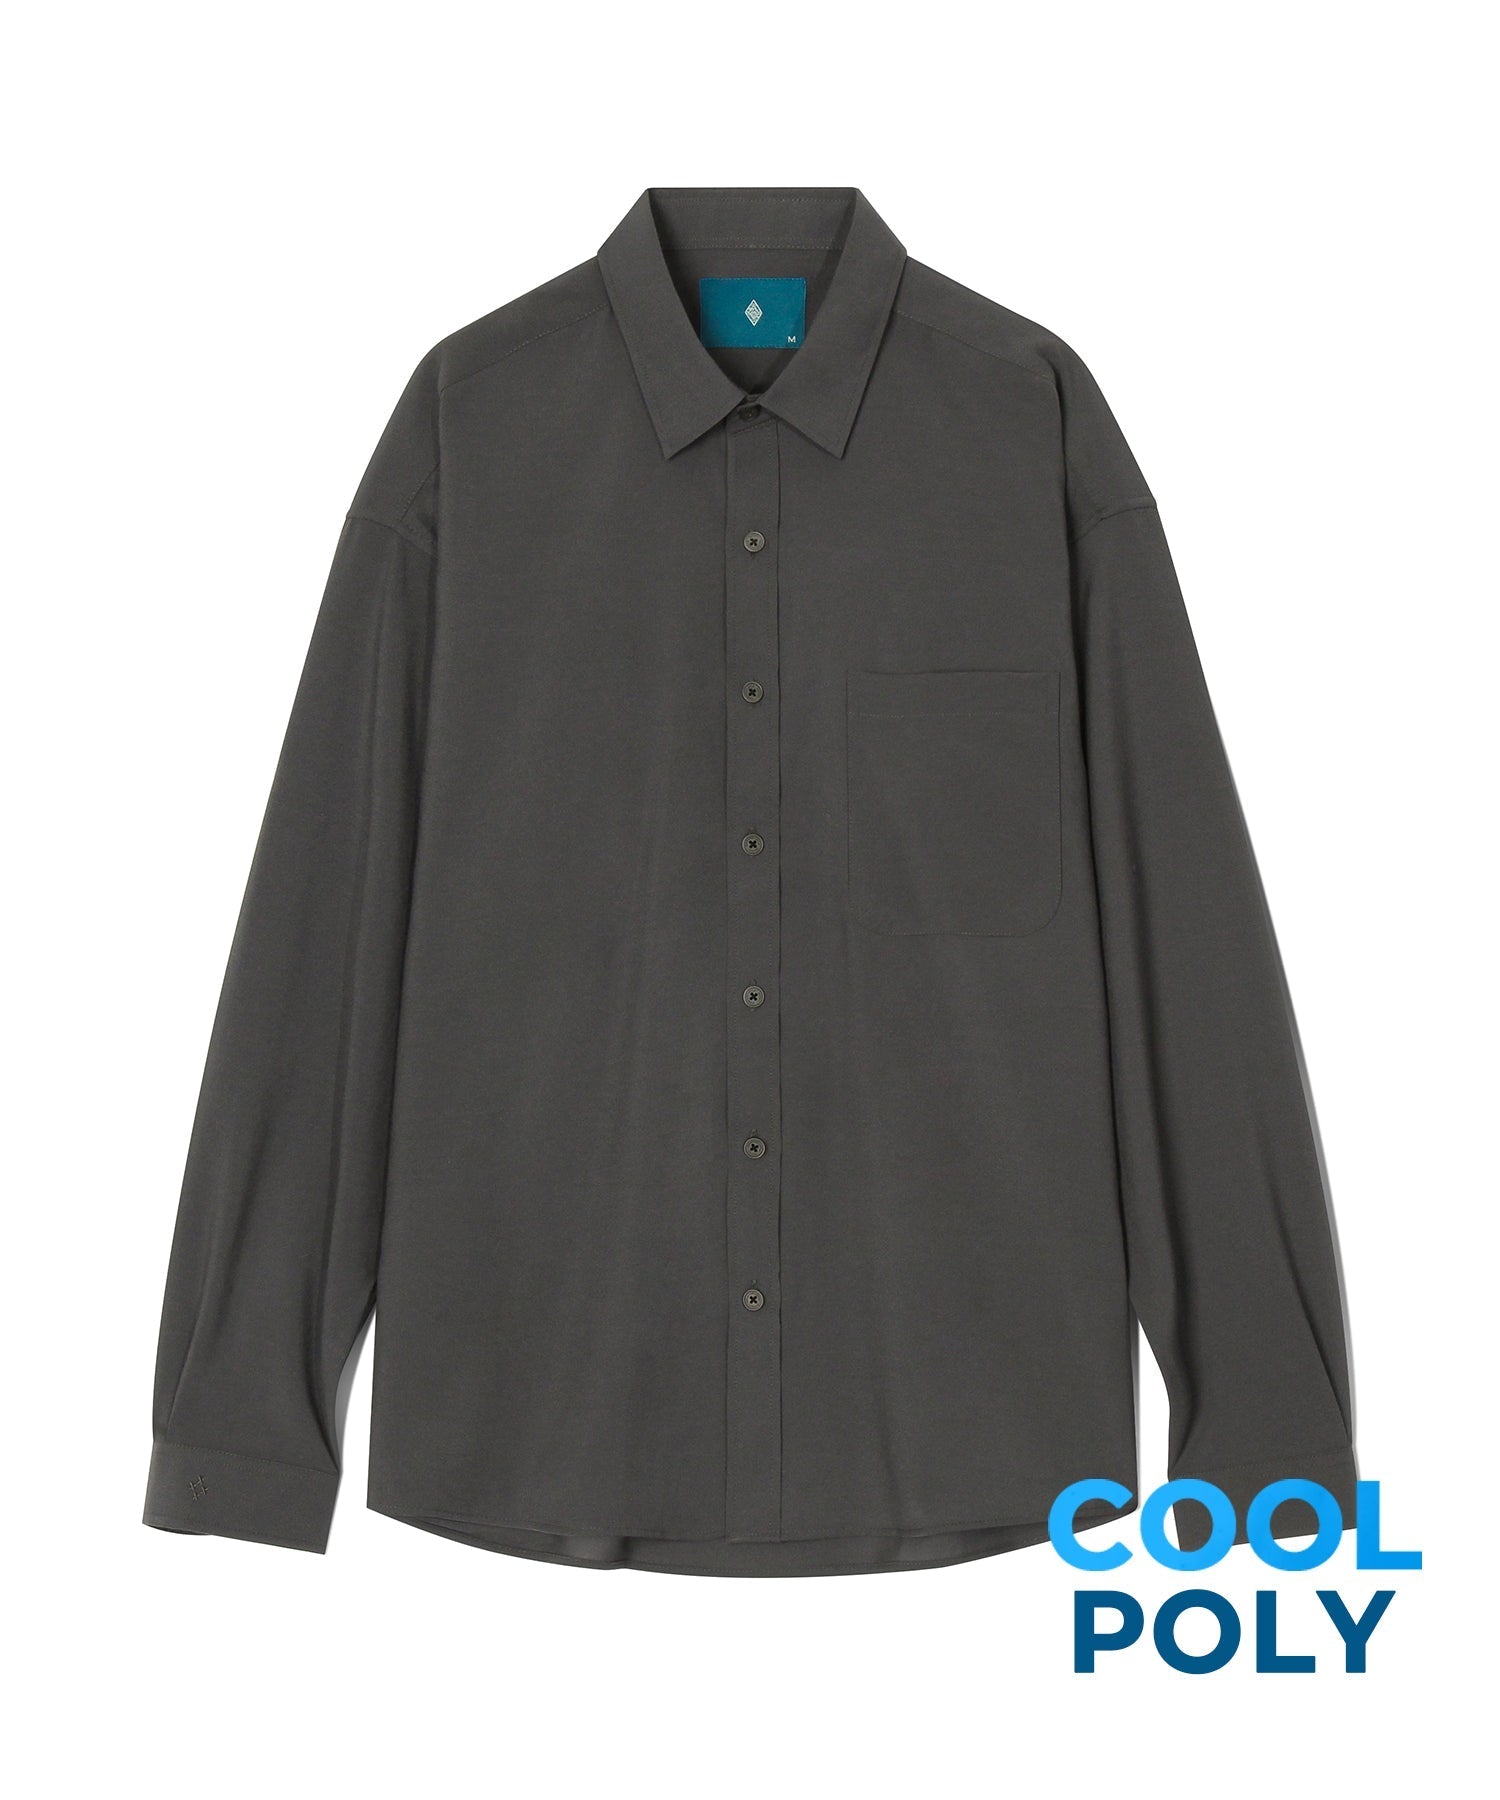 ポリシャツS92/Poly Shirt S92 Charcoal – 60% - SIXTYPERCENT